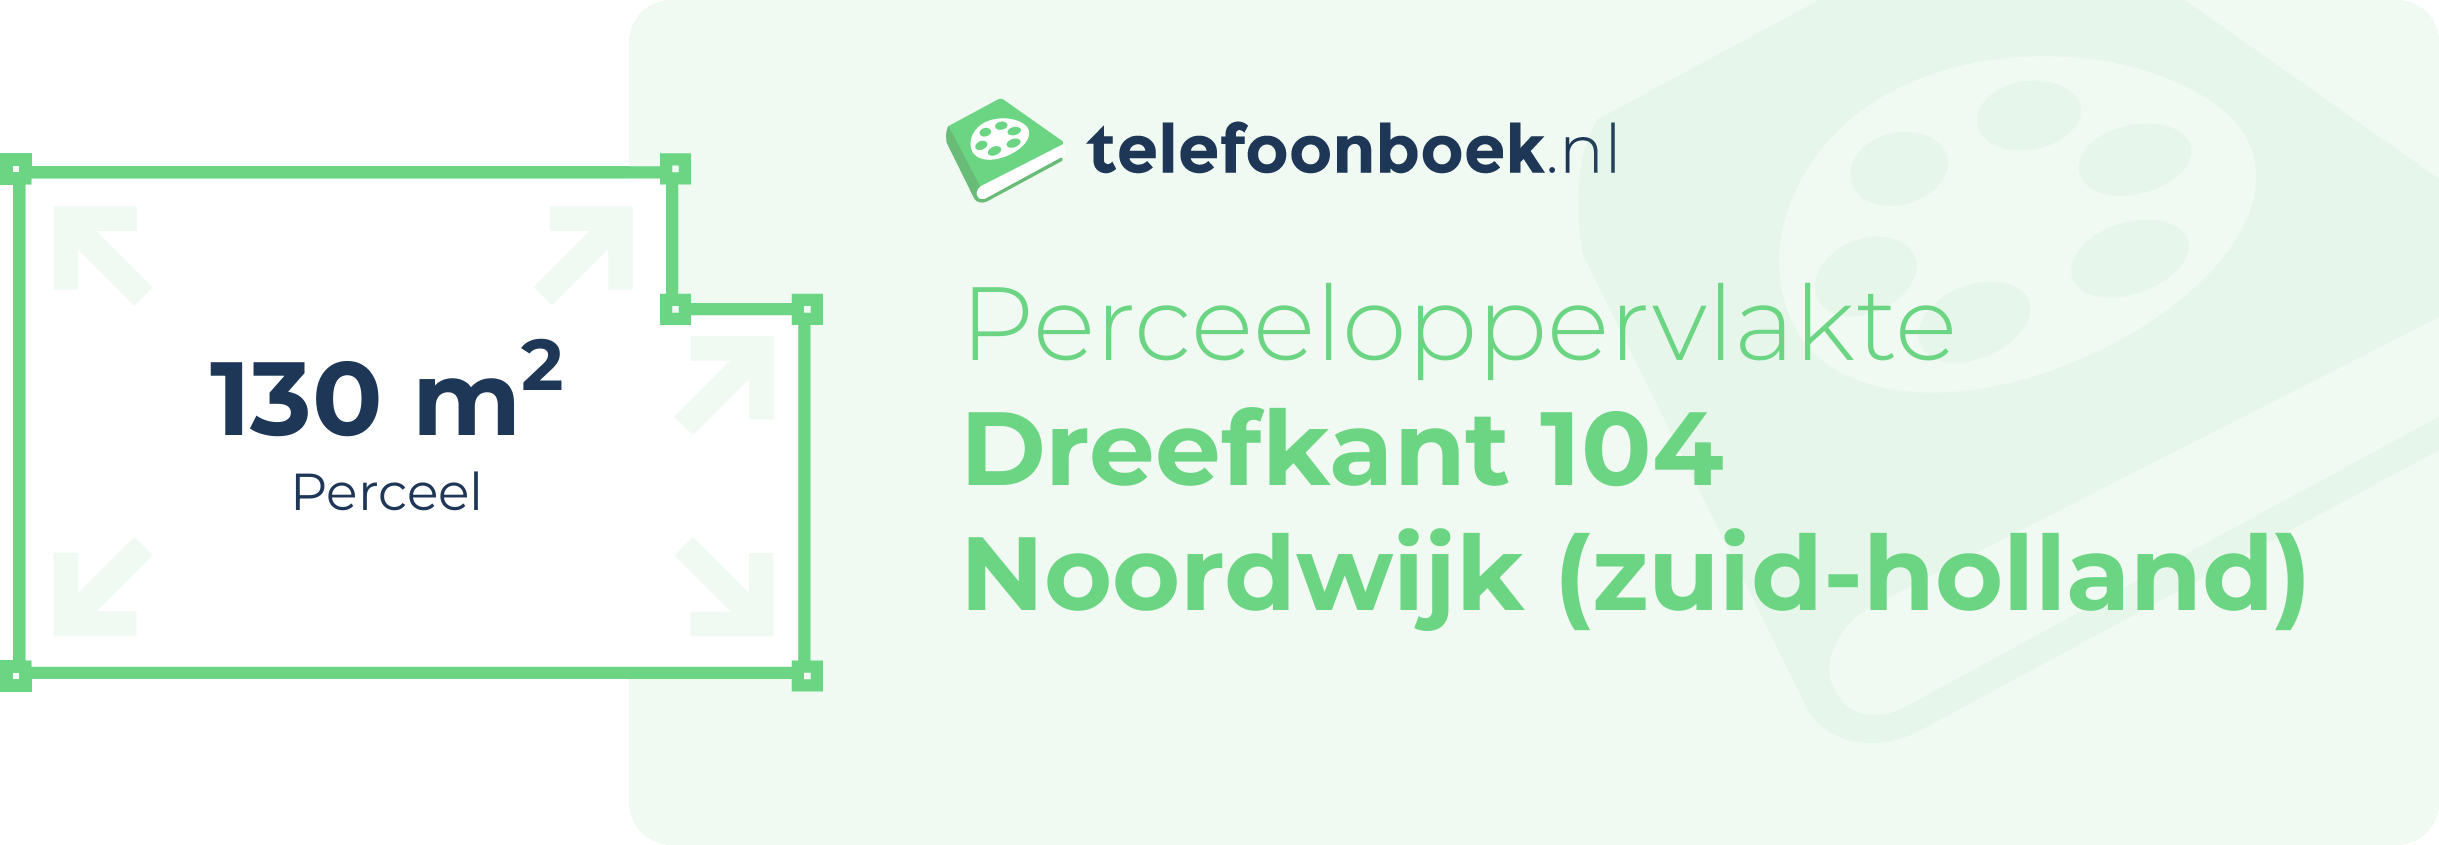 Perceeloppervlakte Dreefkant 104 Noordwijk (Zuid-Holland)